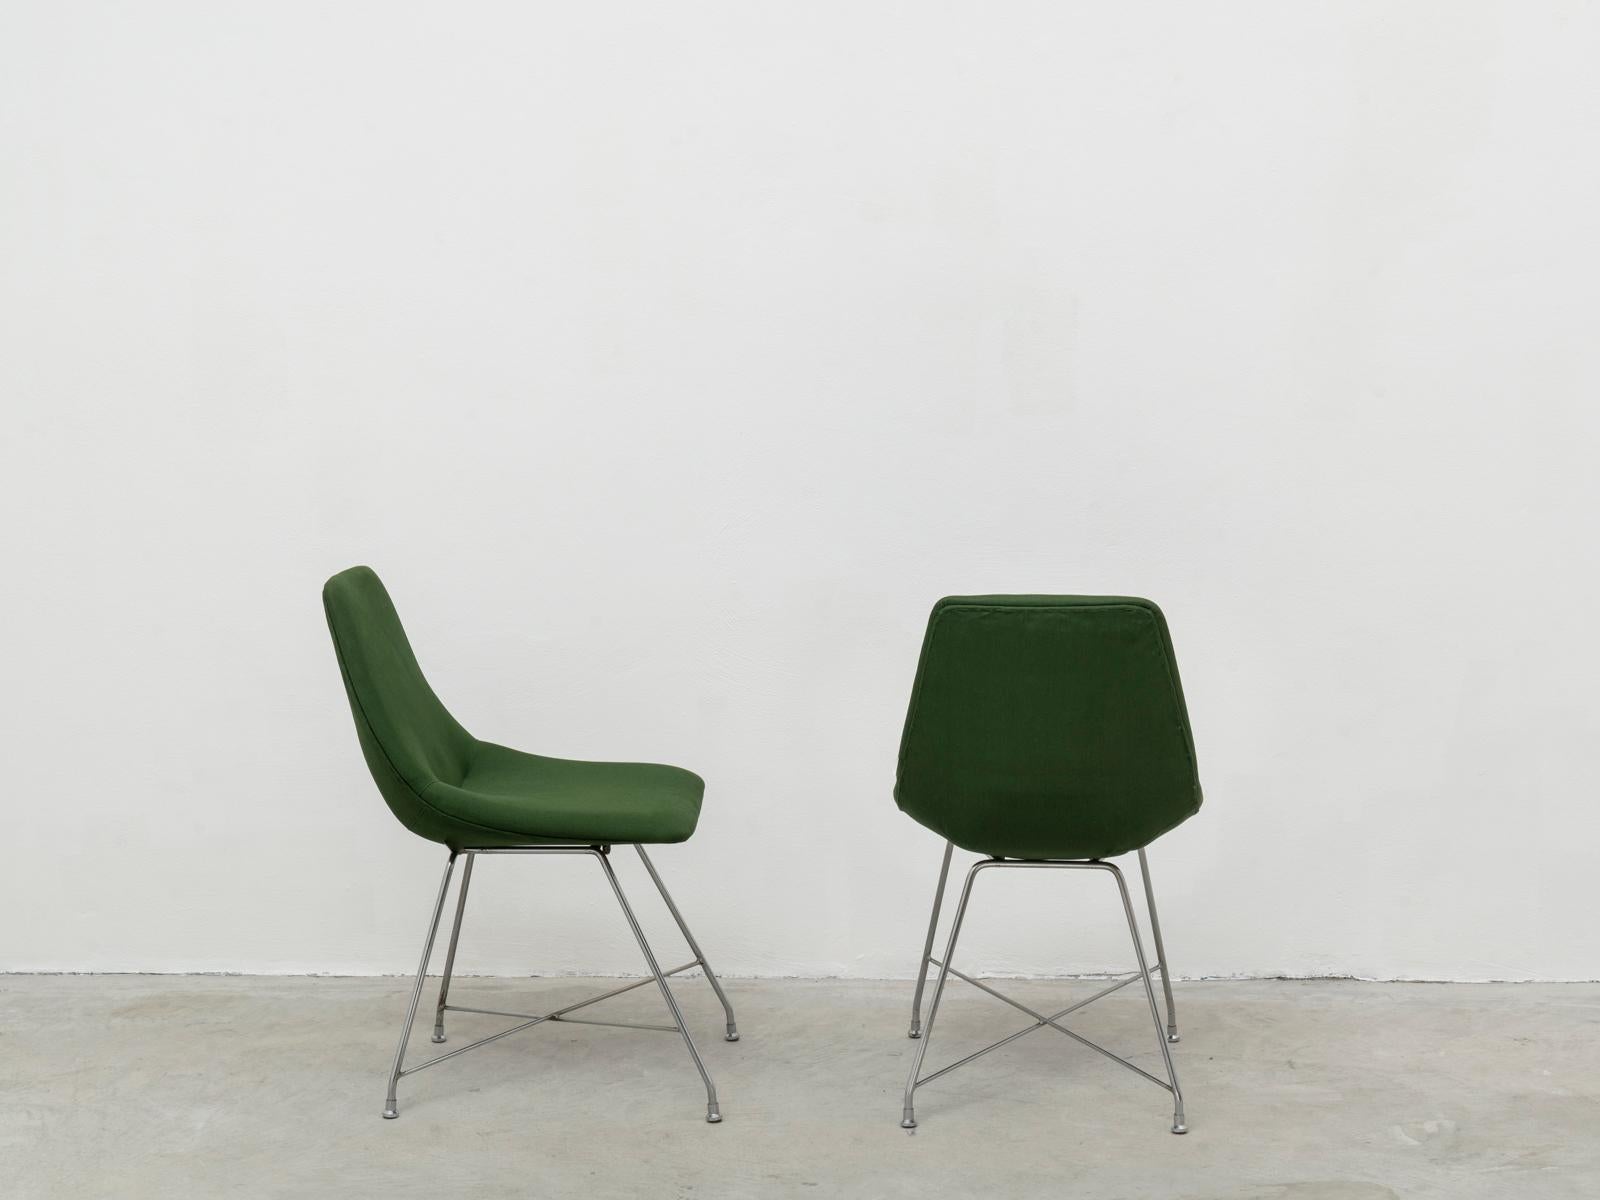 Ensemble de 4 chaises iconiques, modèle Aster, conçues par Augusto Bozzi pour Saporiti en 1954. Cet ensemble a probablement été produit au début des années 1960. Version plus rare avec base chromée, patinée. Oxydation plus forte sur une base sur